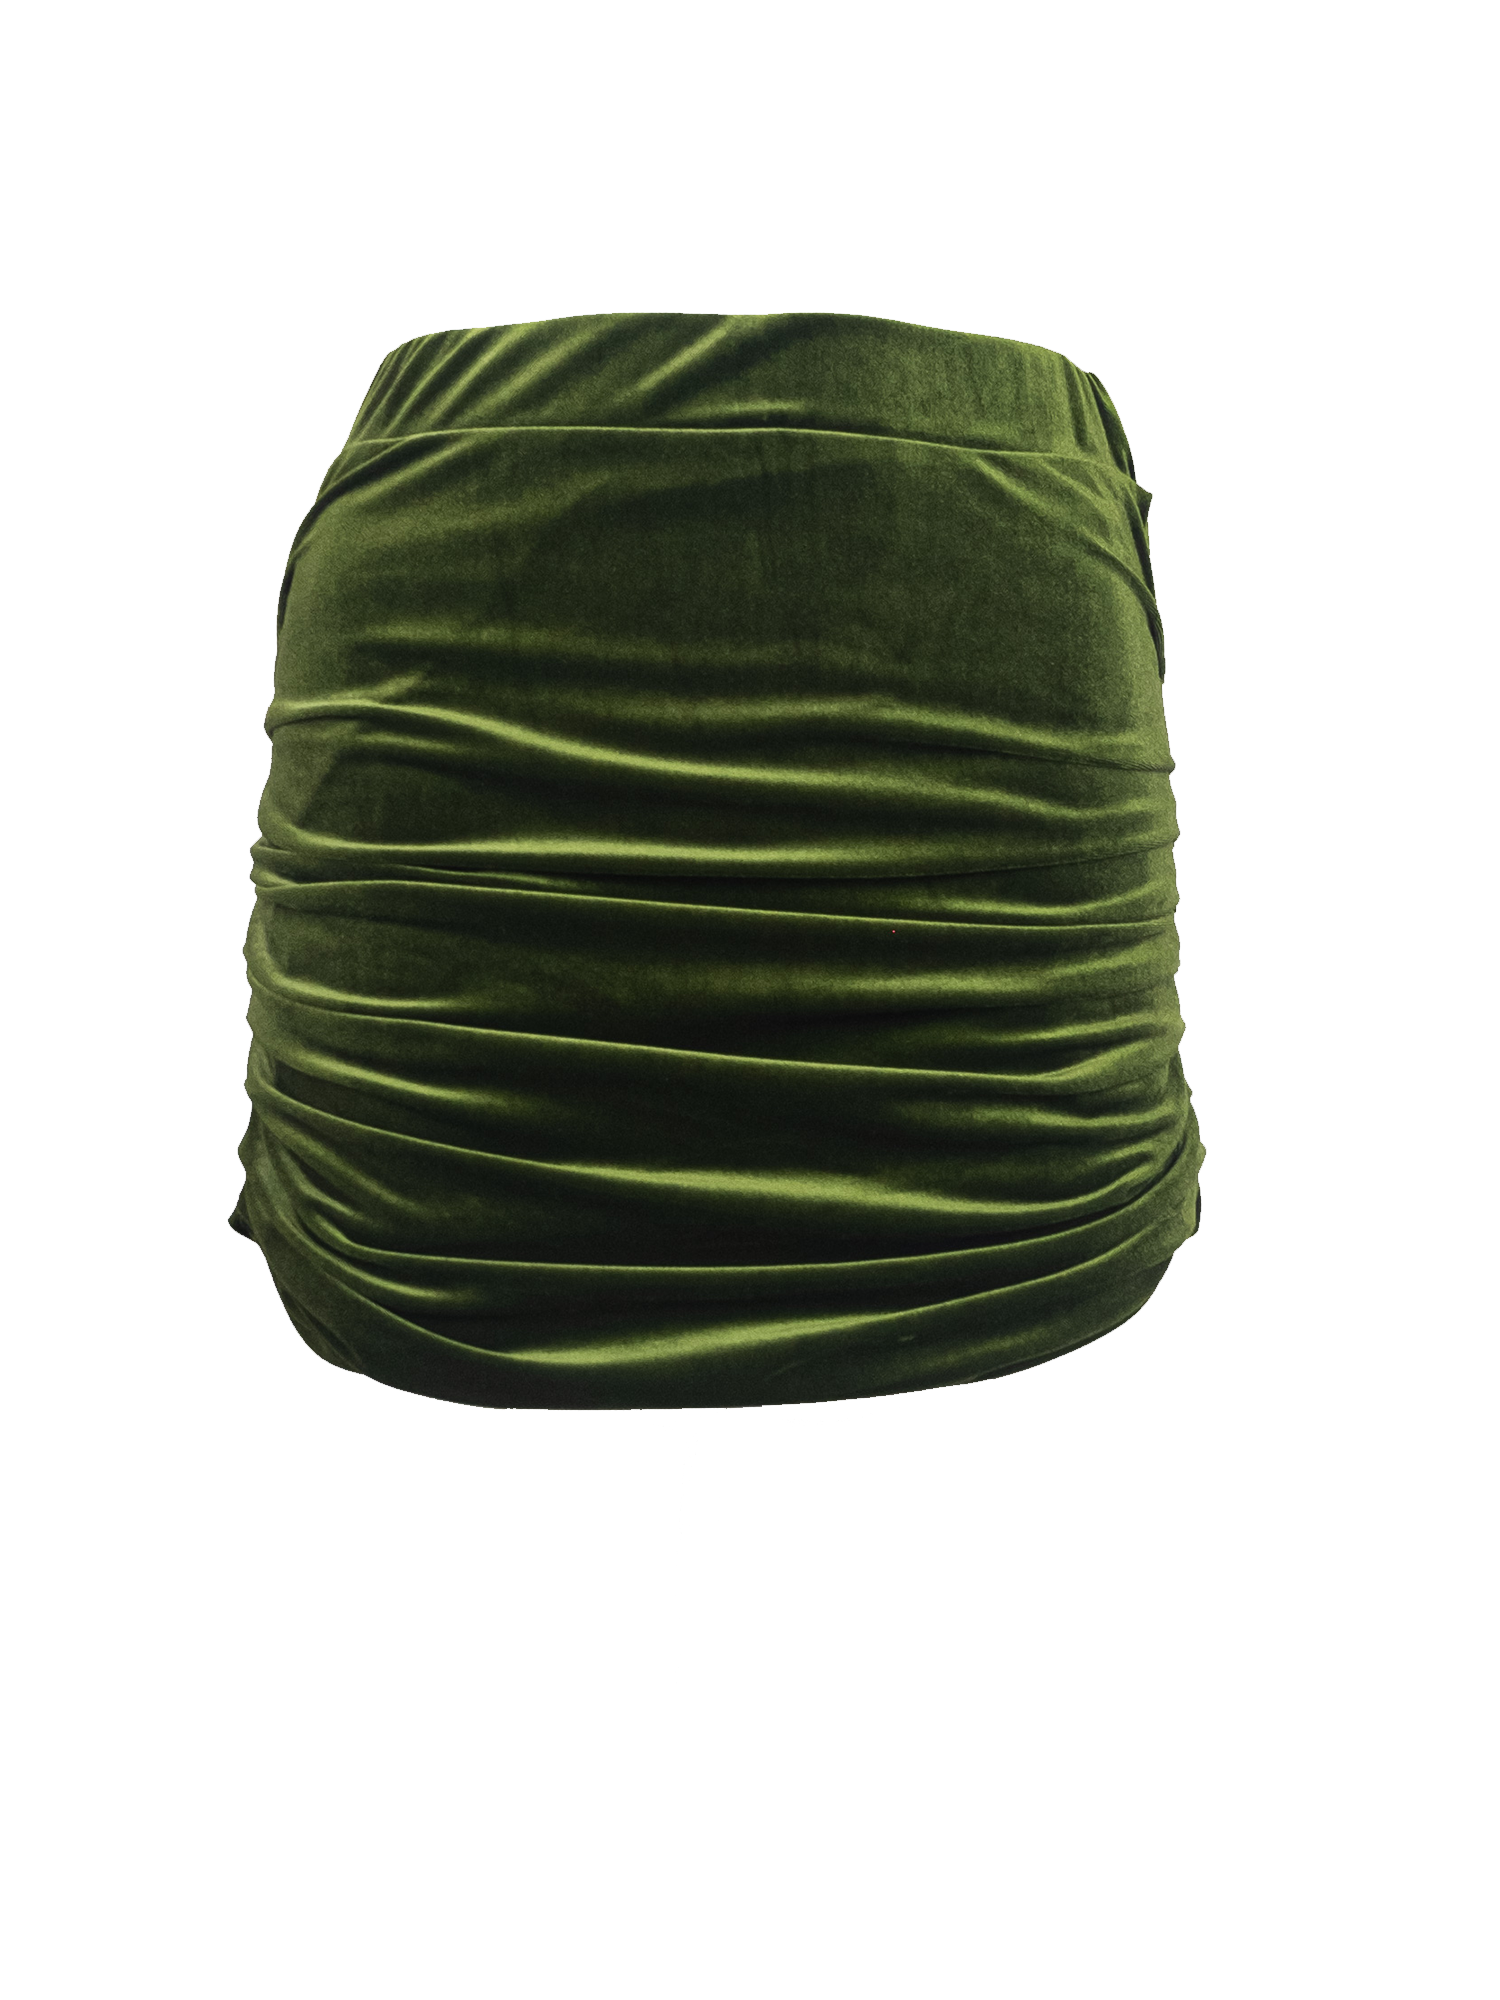 NINA - drap skirt in green chenille